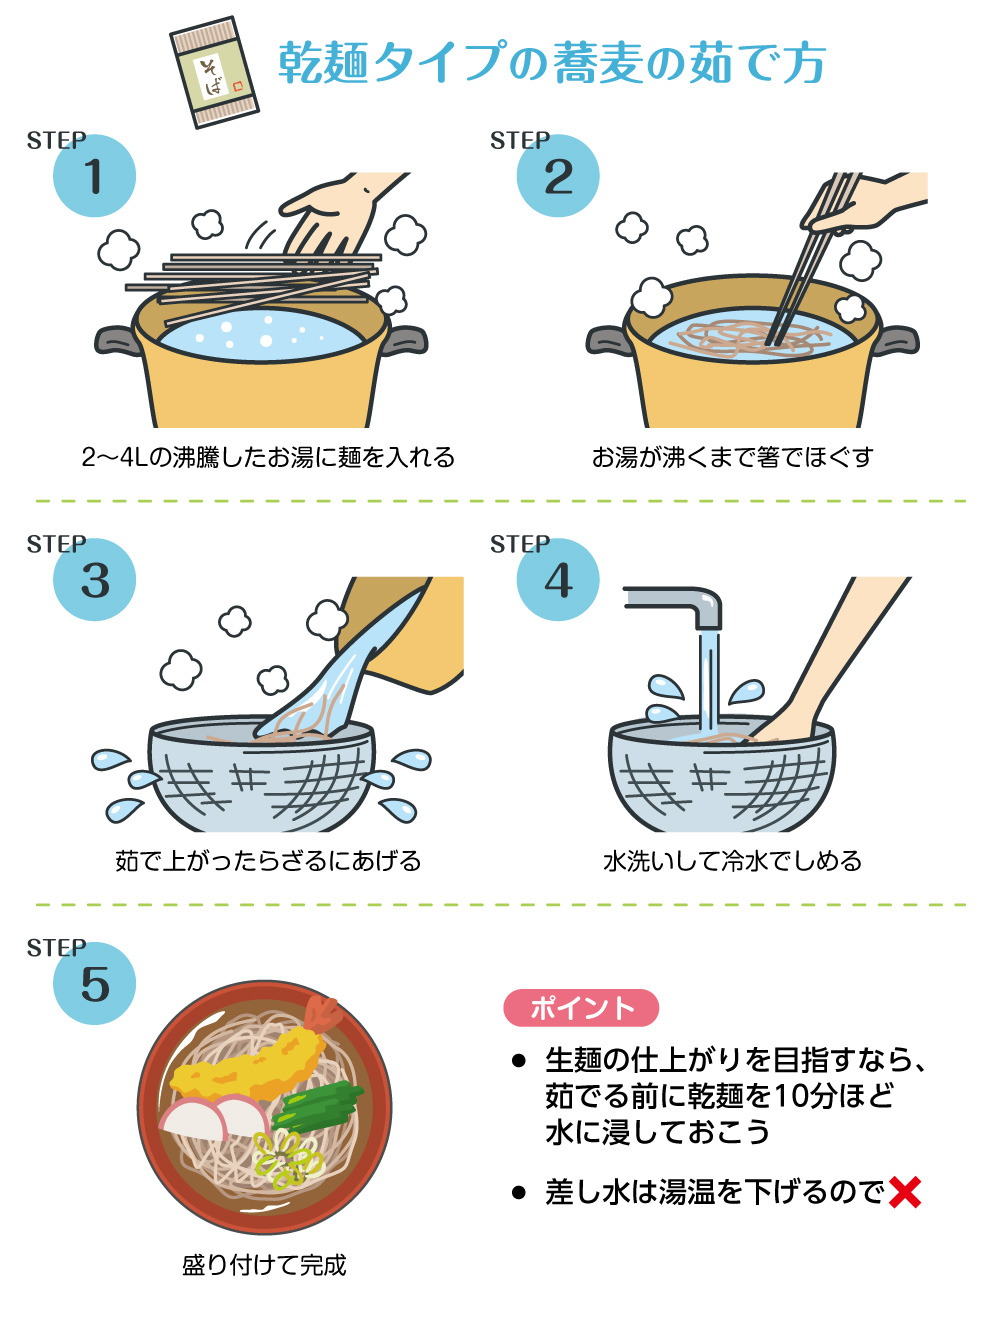 麺類 など を 茹でる とき 沸騰 後に 加える 水 は